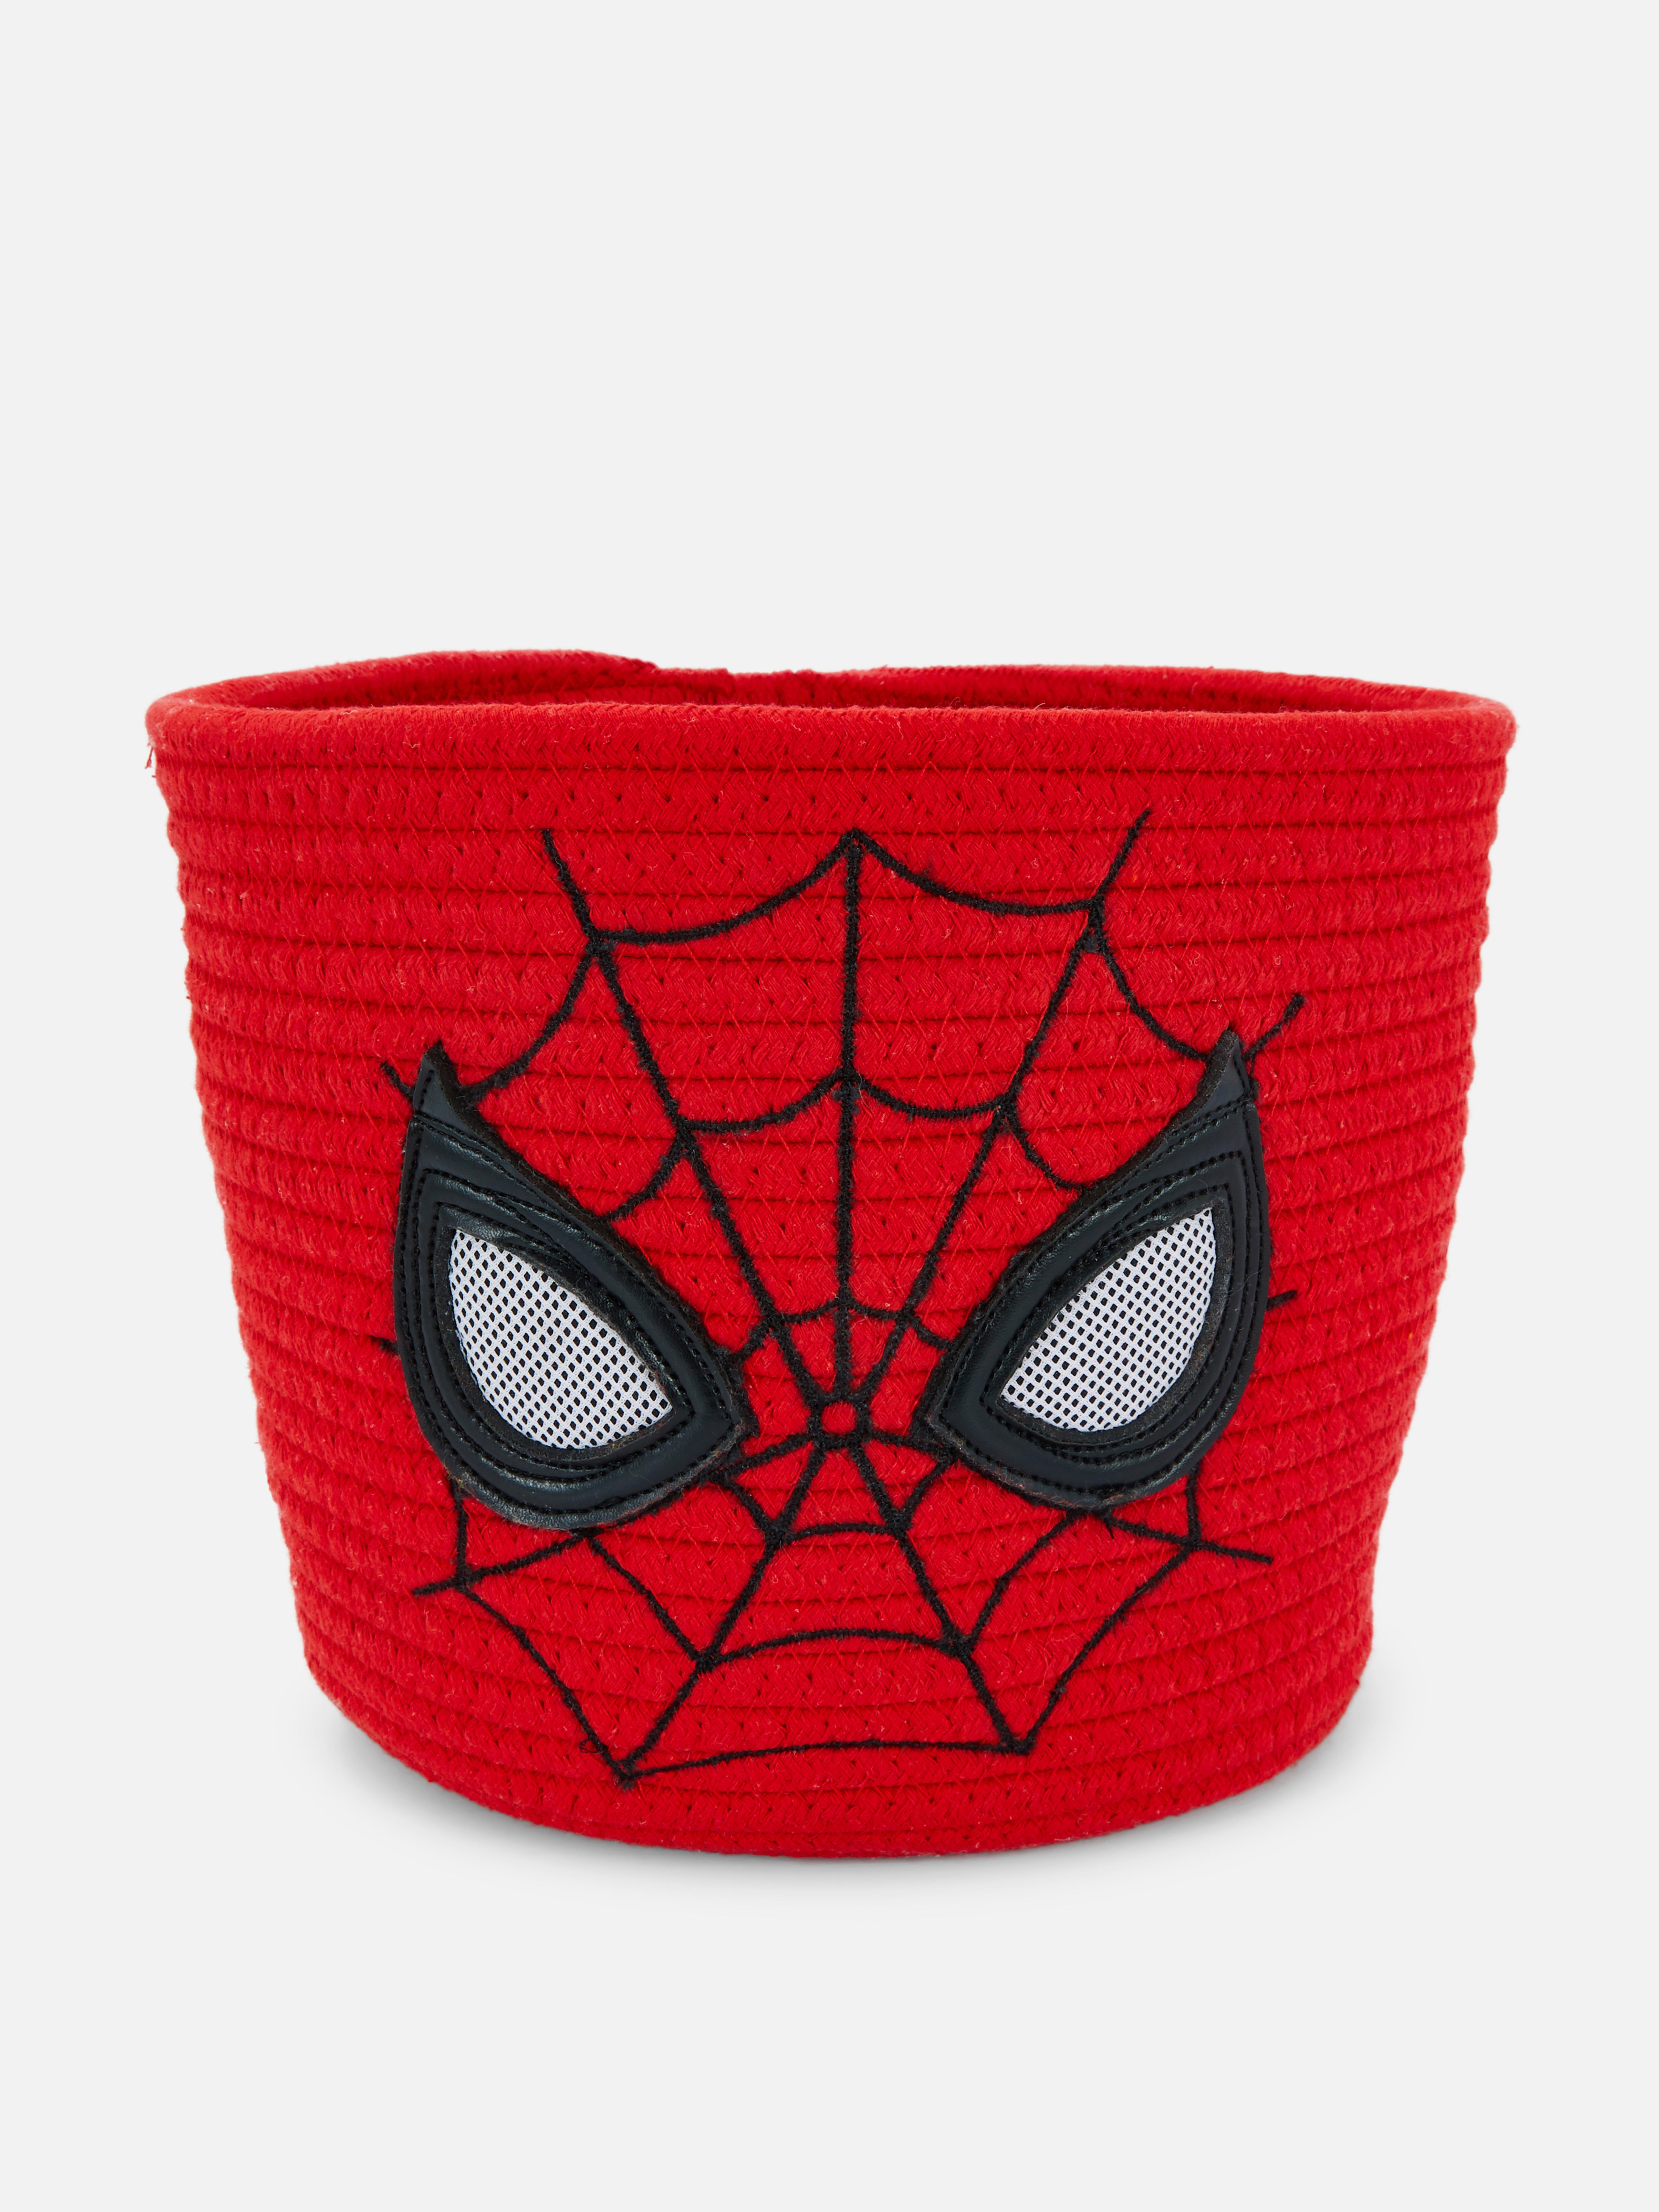 Marvel Spider-Man Rope Basket